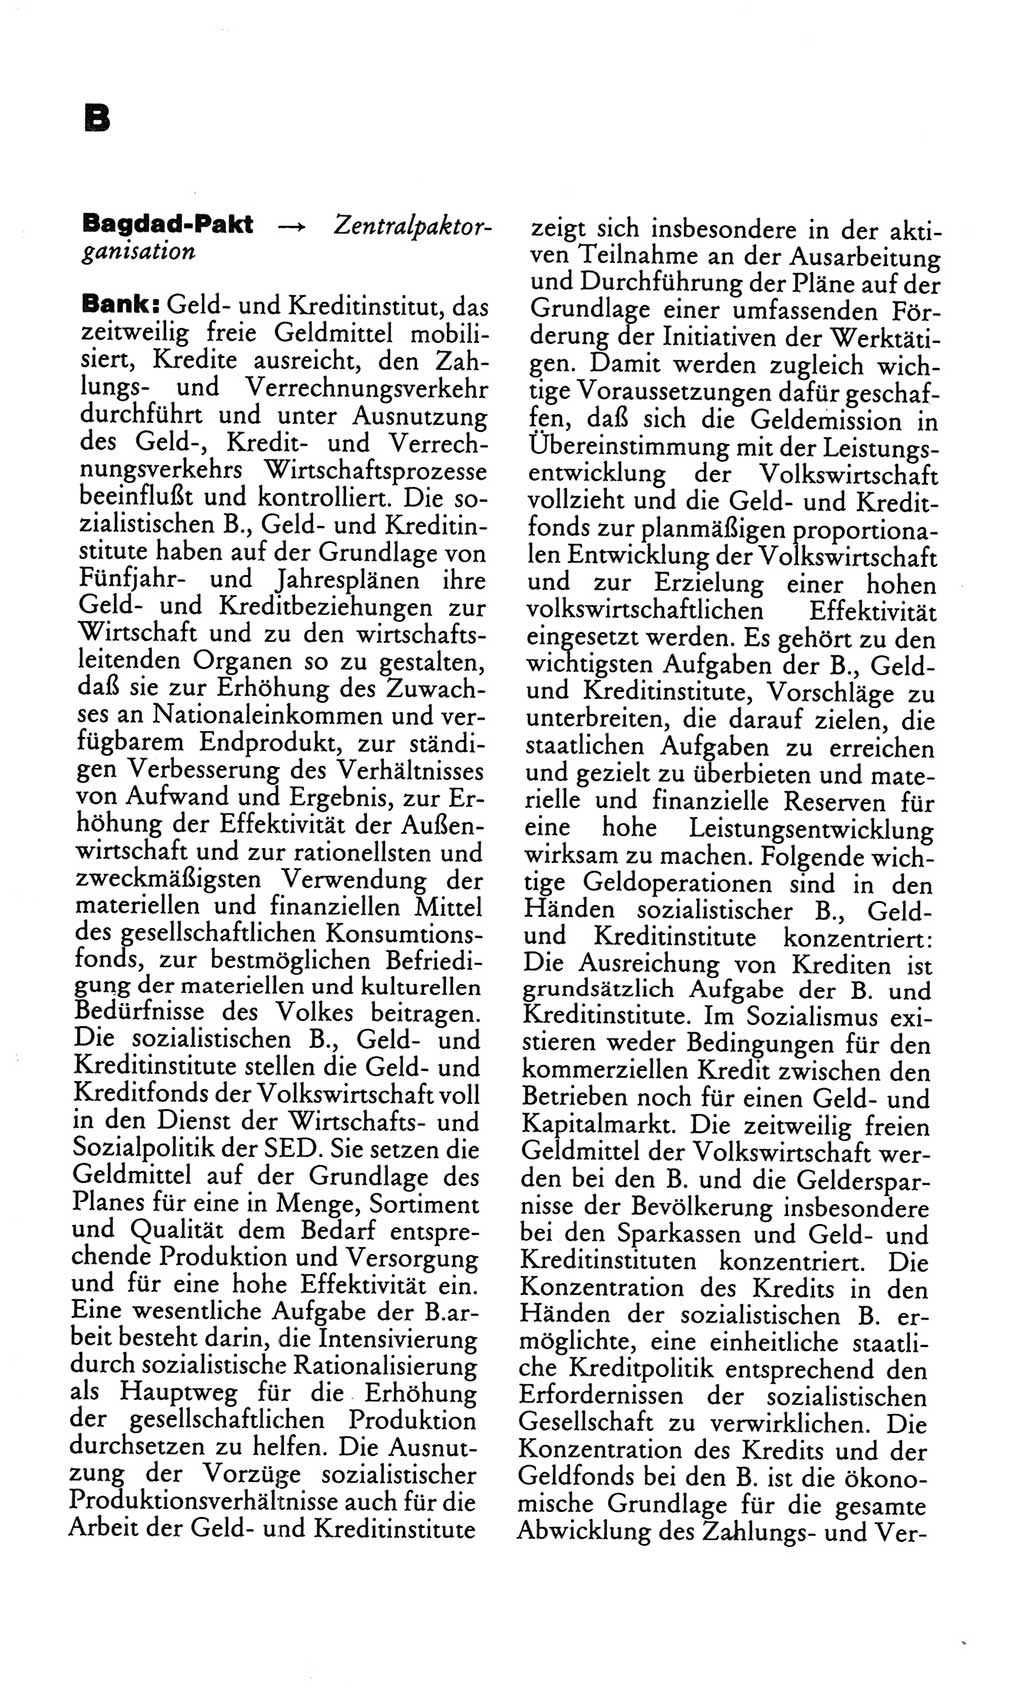 Kleines politisches Wörterbuch [Deutsche Demokratische Republik (DDR)] 1986, Seite 114 (Kl. pol. Wb. DDR 1986, S. 114)